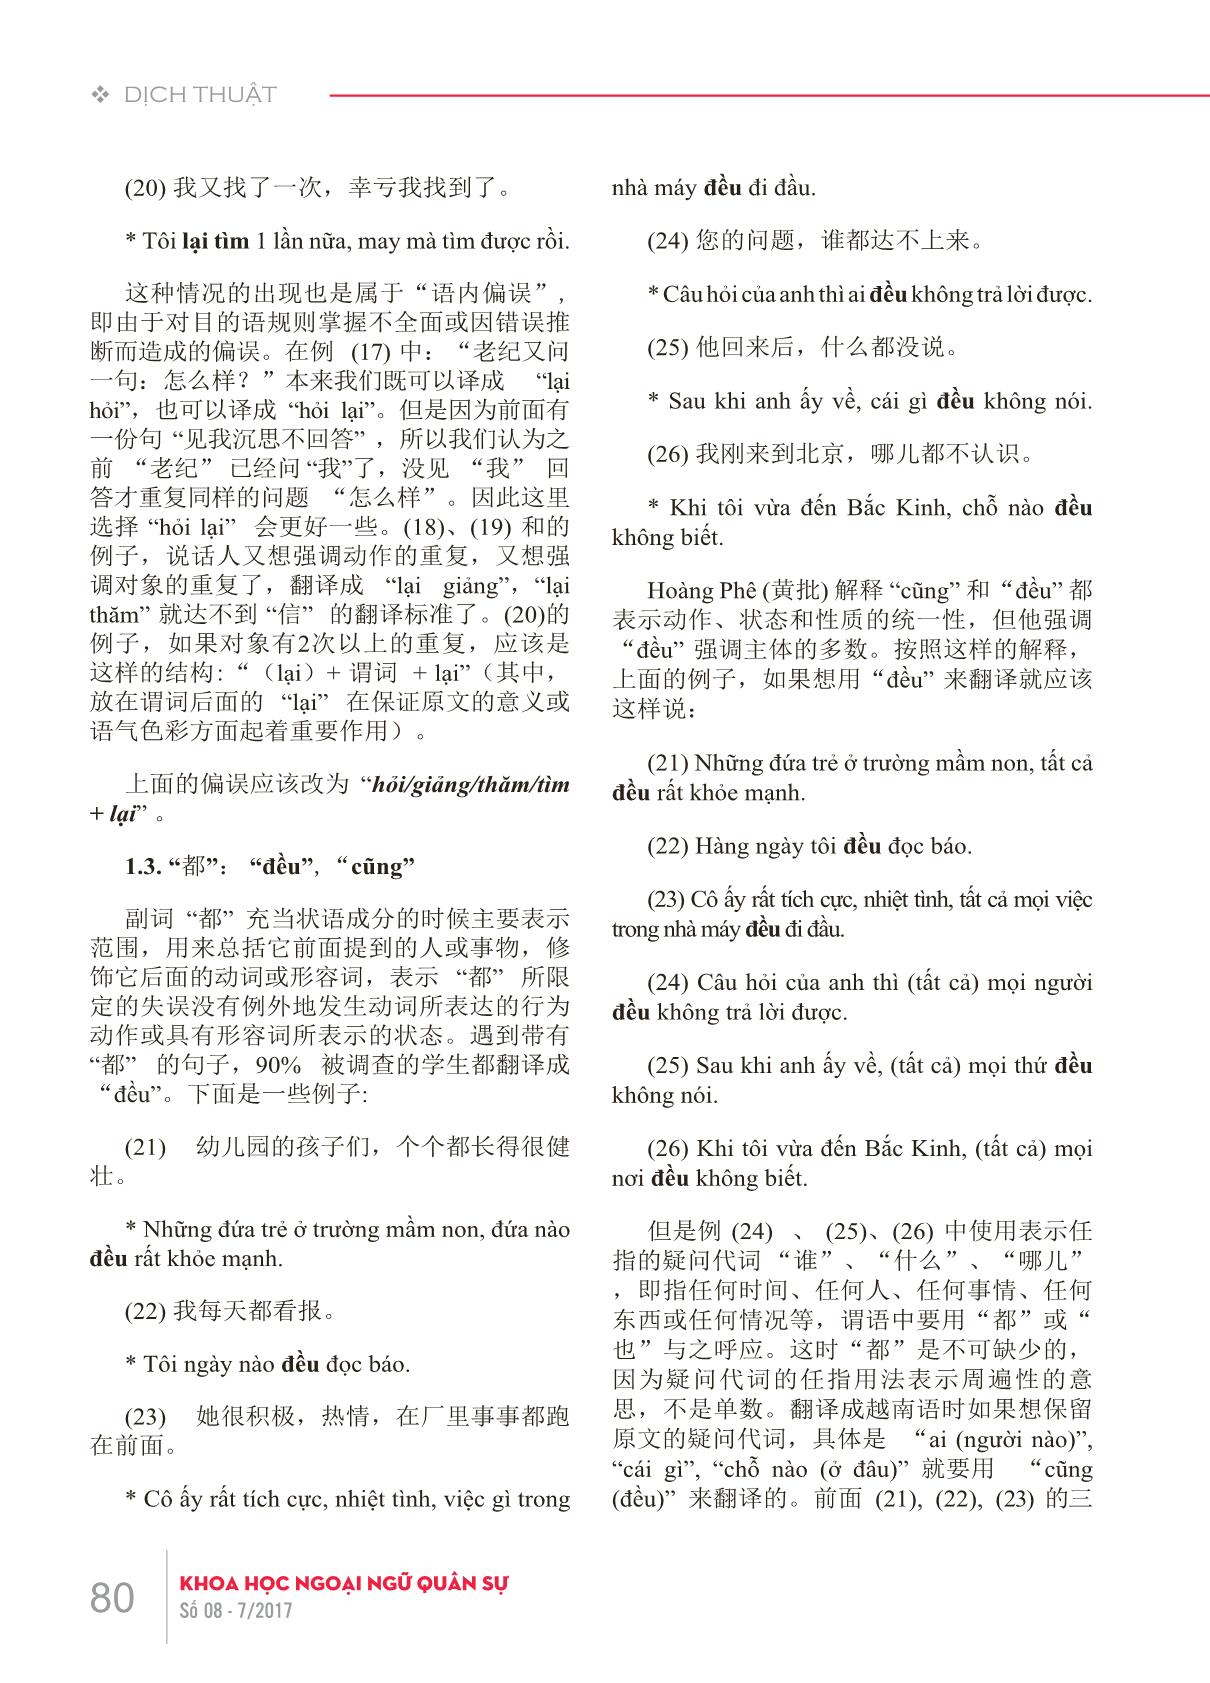 Phân tích lỗi của sinh viên Trung Quốc khi dịch trạng ngữ từ tiếng Trung Quốc sang tiếng Việt trang 5